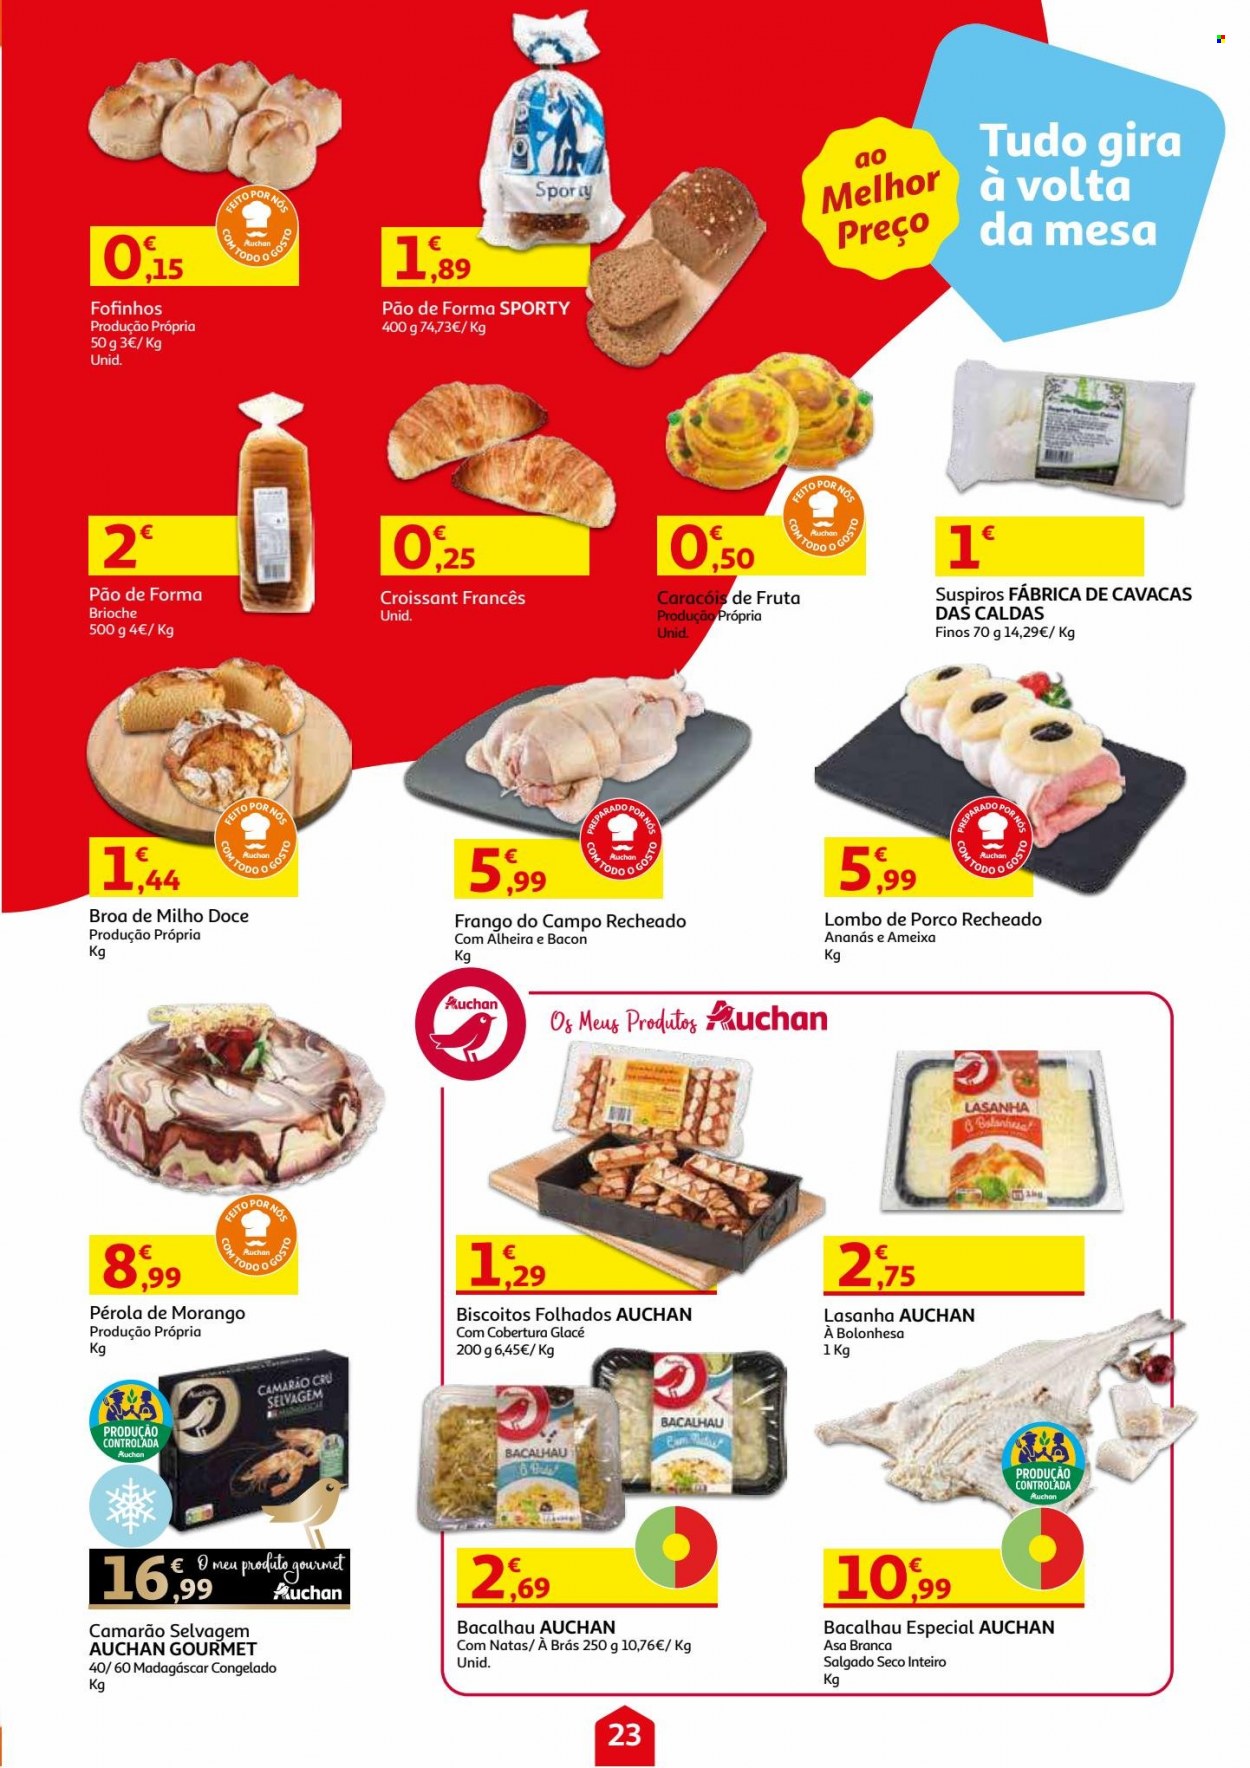 thumbnail - Folheto Auchan - 3.11.2021 - 18.11.2021 - Produtos em promoção - lombo, lombo de porco, pão, pão de forma, broa de milho, croissant, frango, camarão, bacalhau, lasanha, bacon, alheira, biscoito. Página 23.